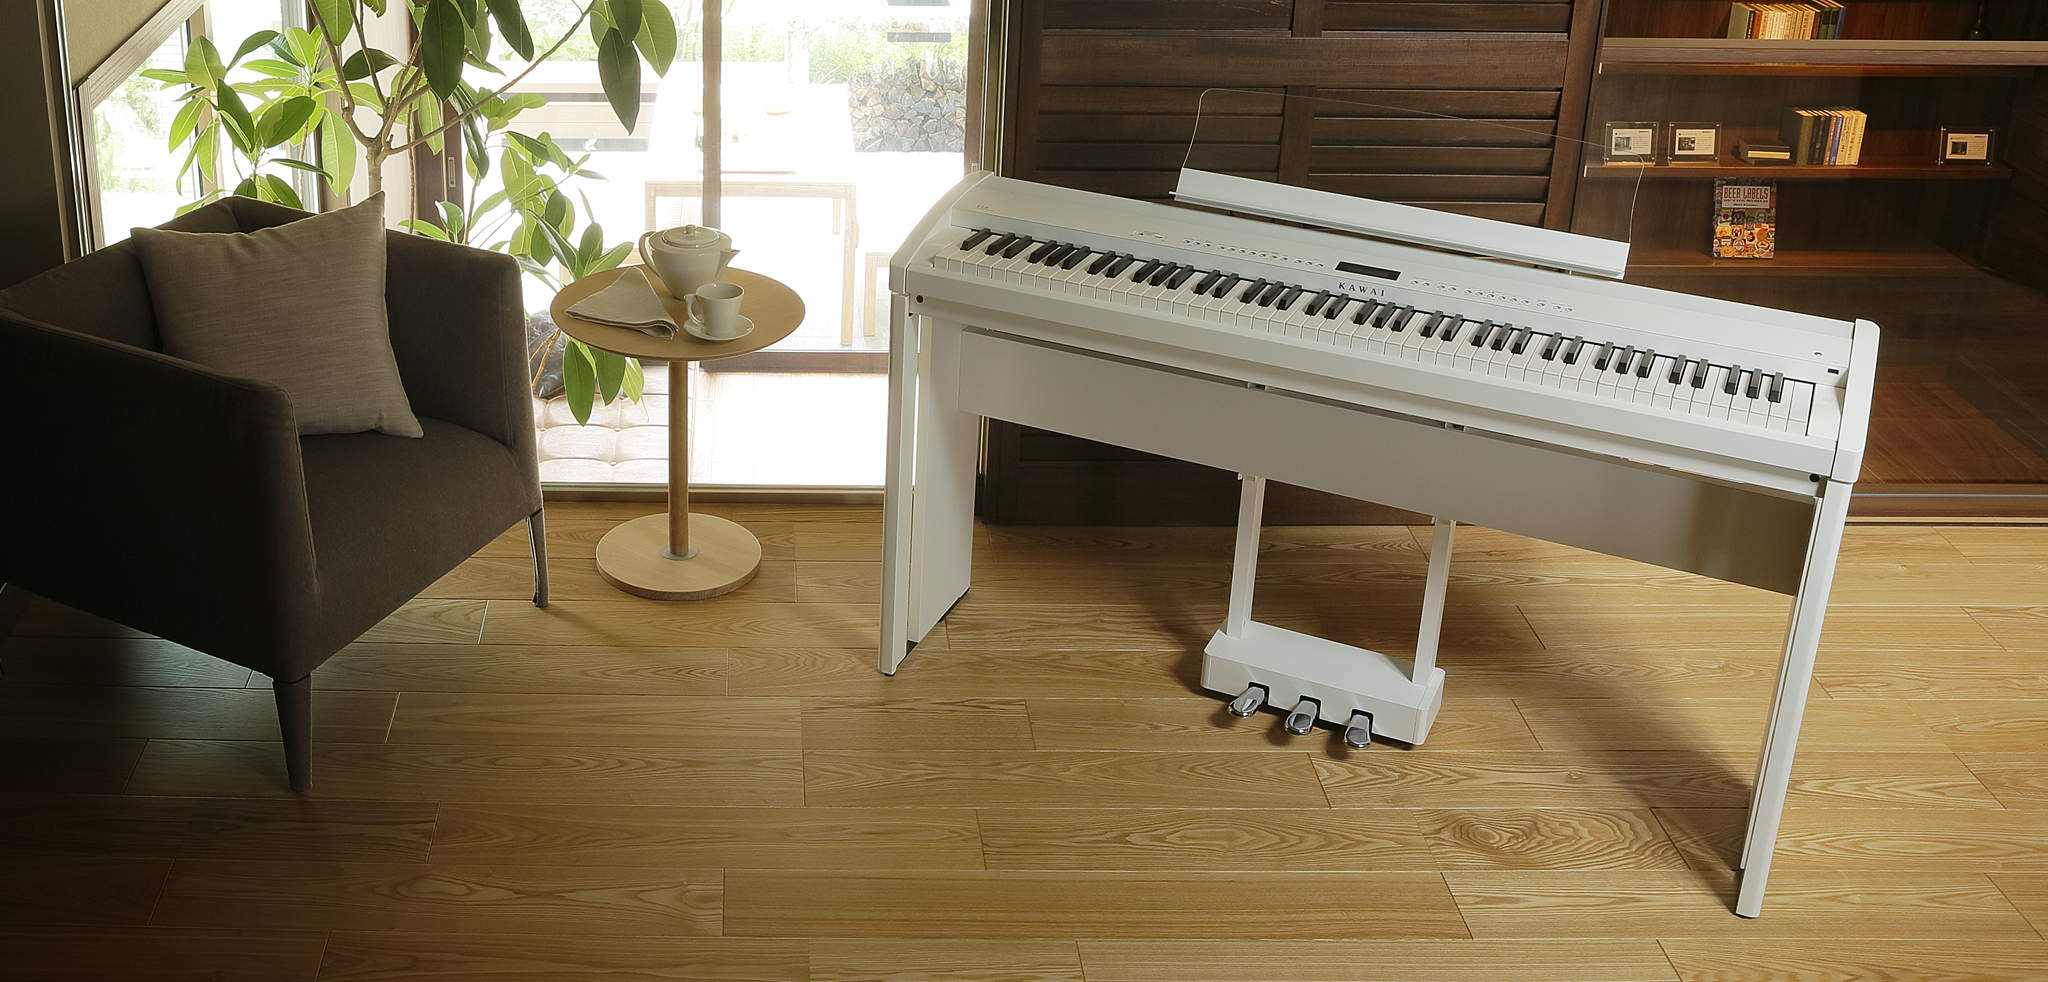 Bí quyết mua đàn piano điện phù hợp không gian